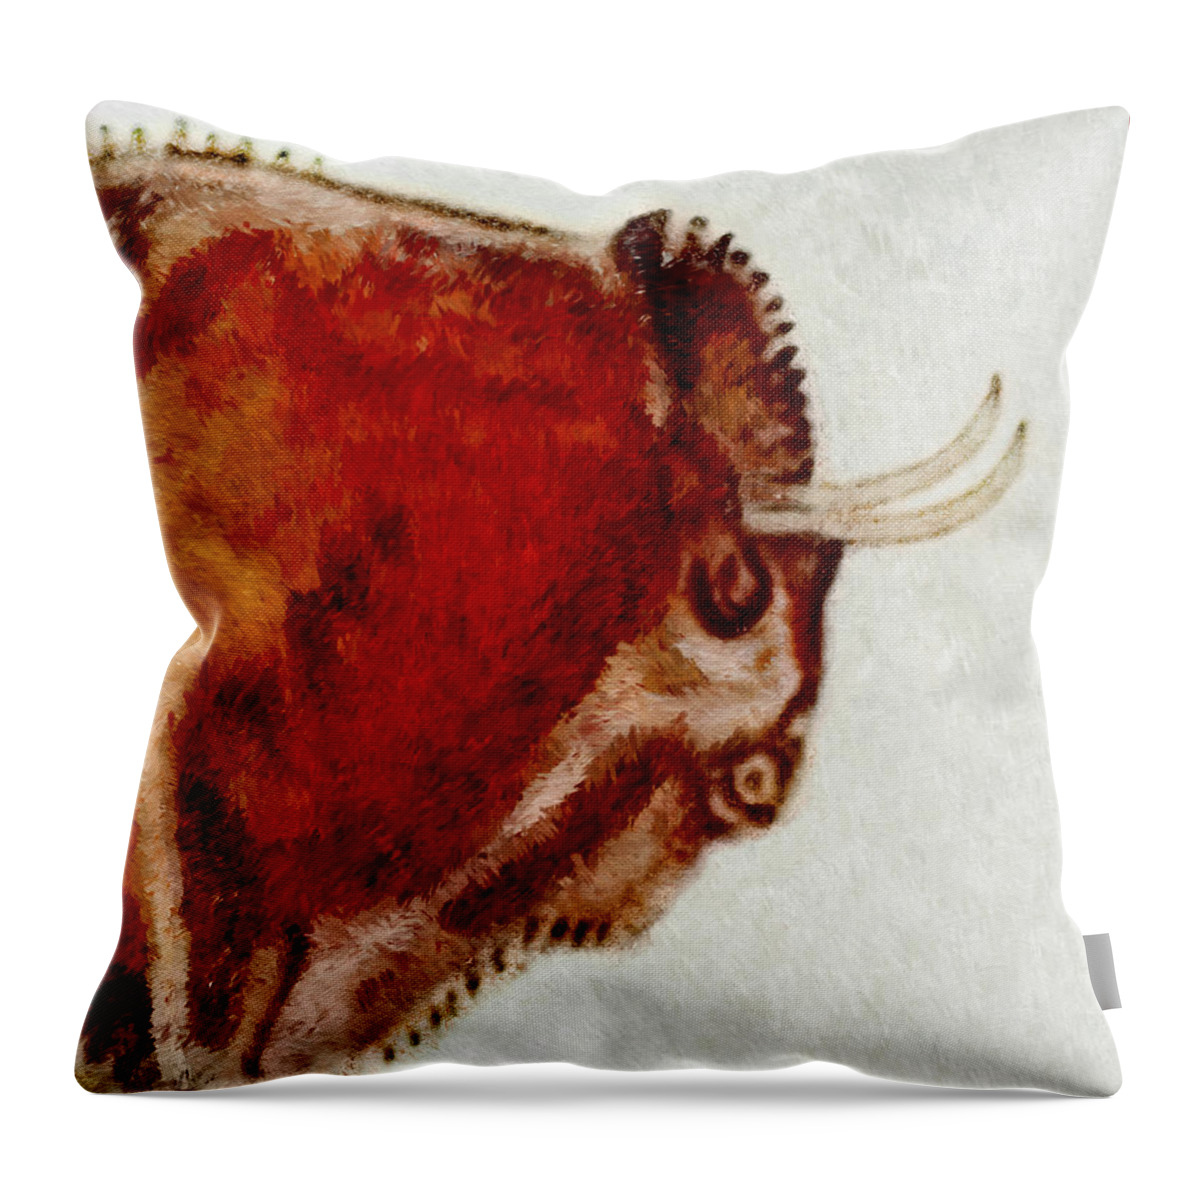 Altamira Throw Pillow featuring the digital art Altamira Prehistoric Bison Detail by Weston Westmoreland